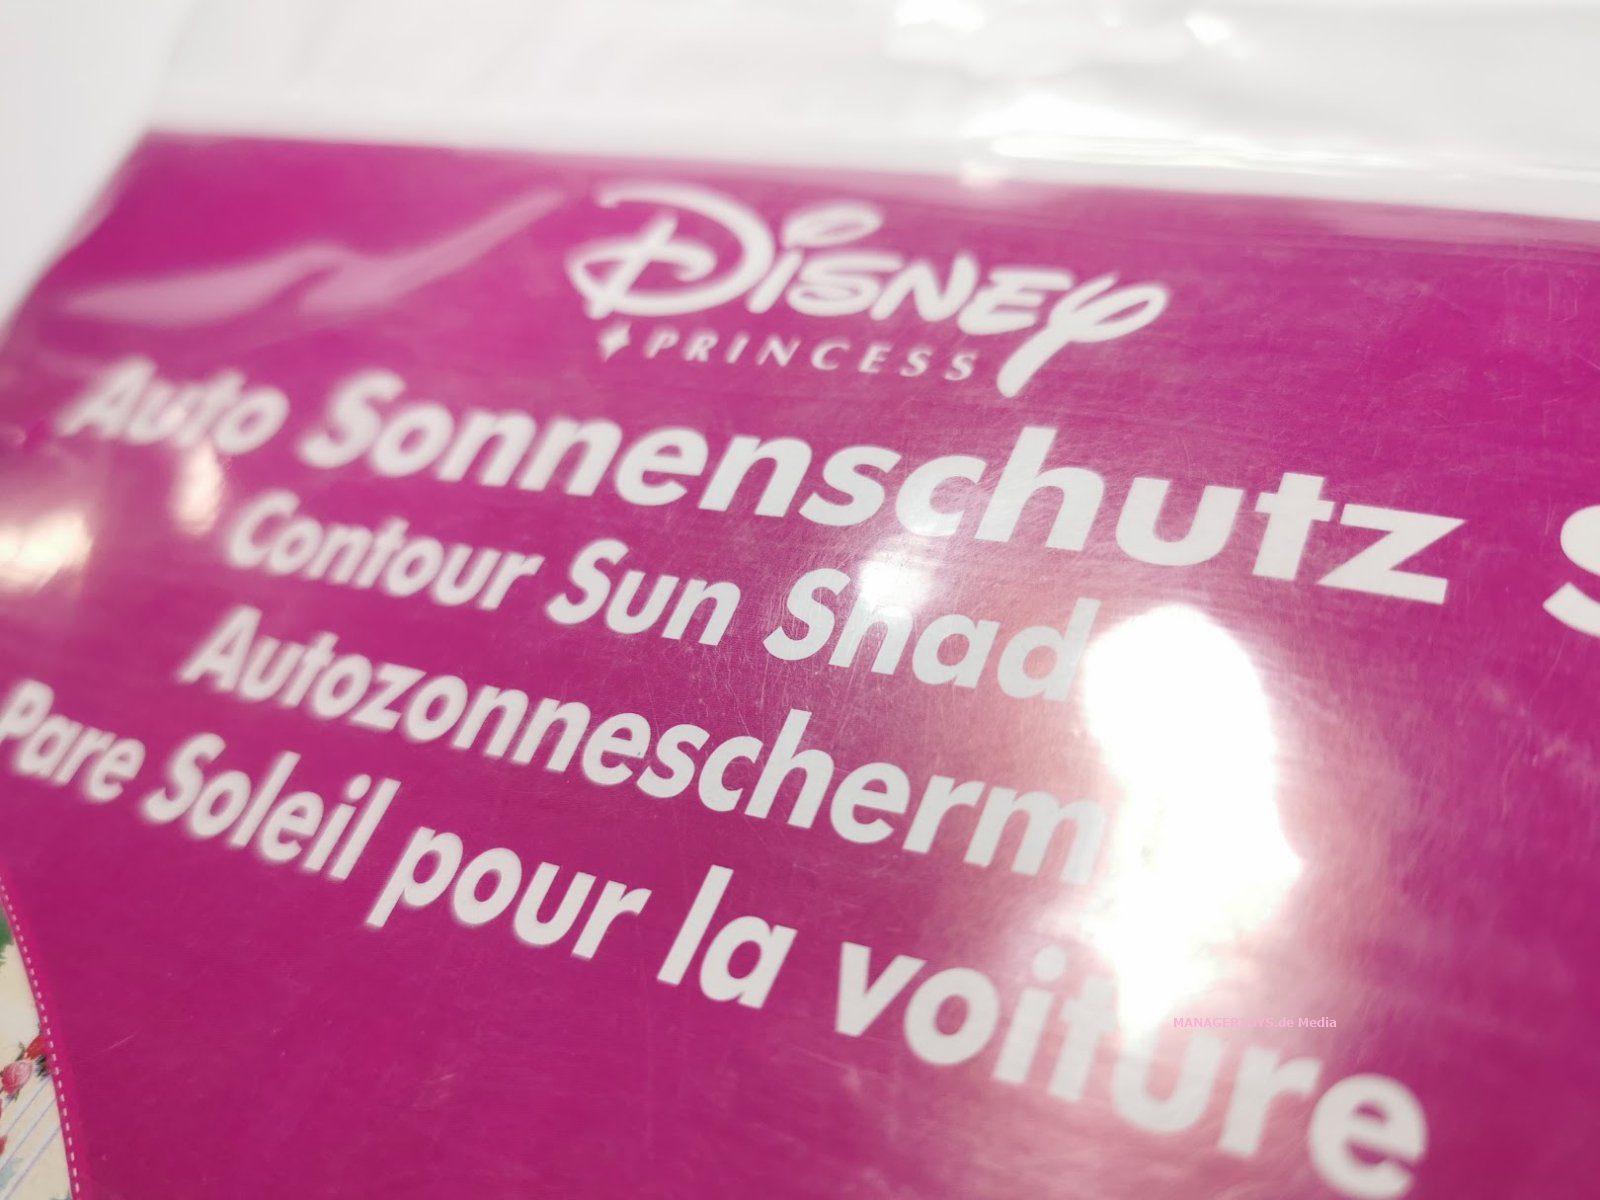 Disney Sonnenschutz fürs Auto Minnie Maus 2er Set